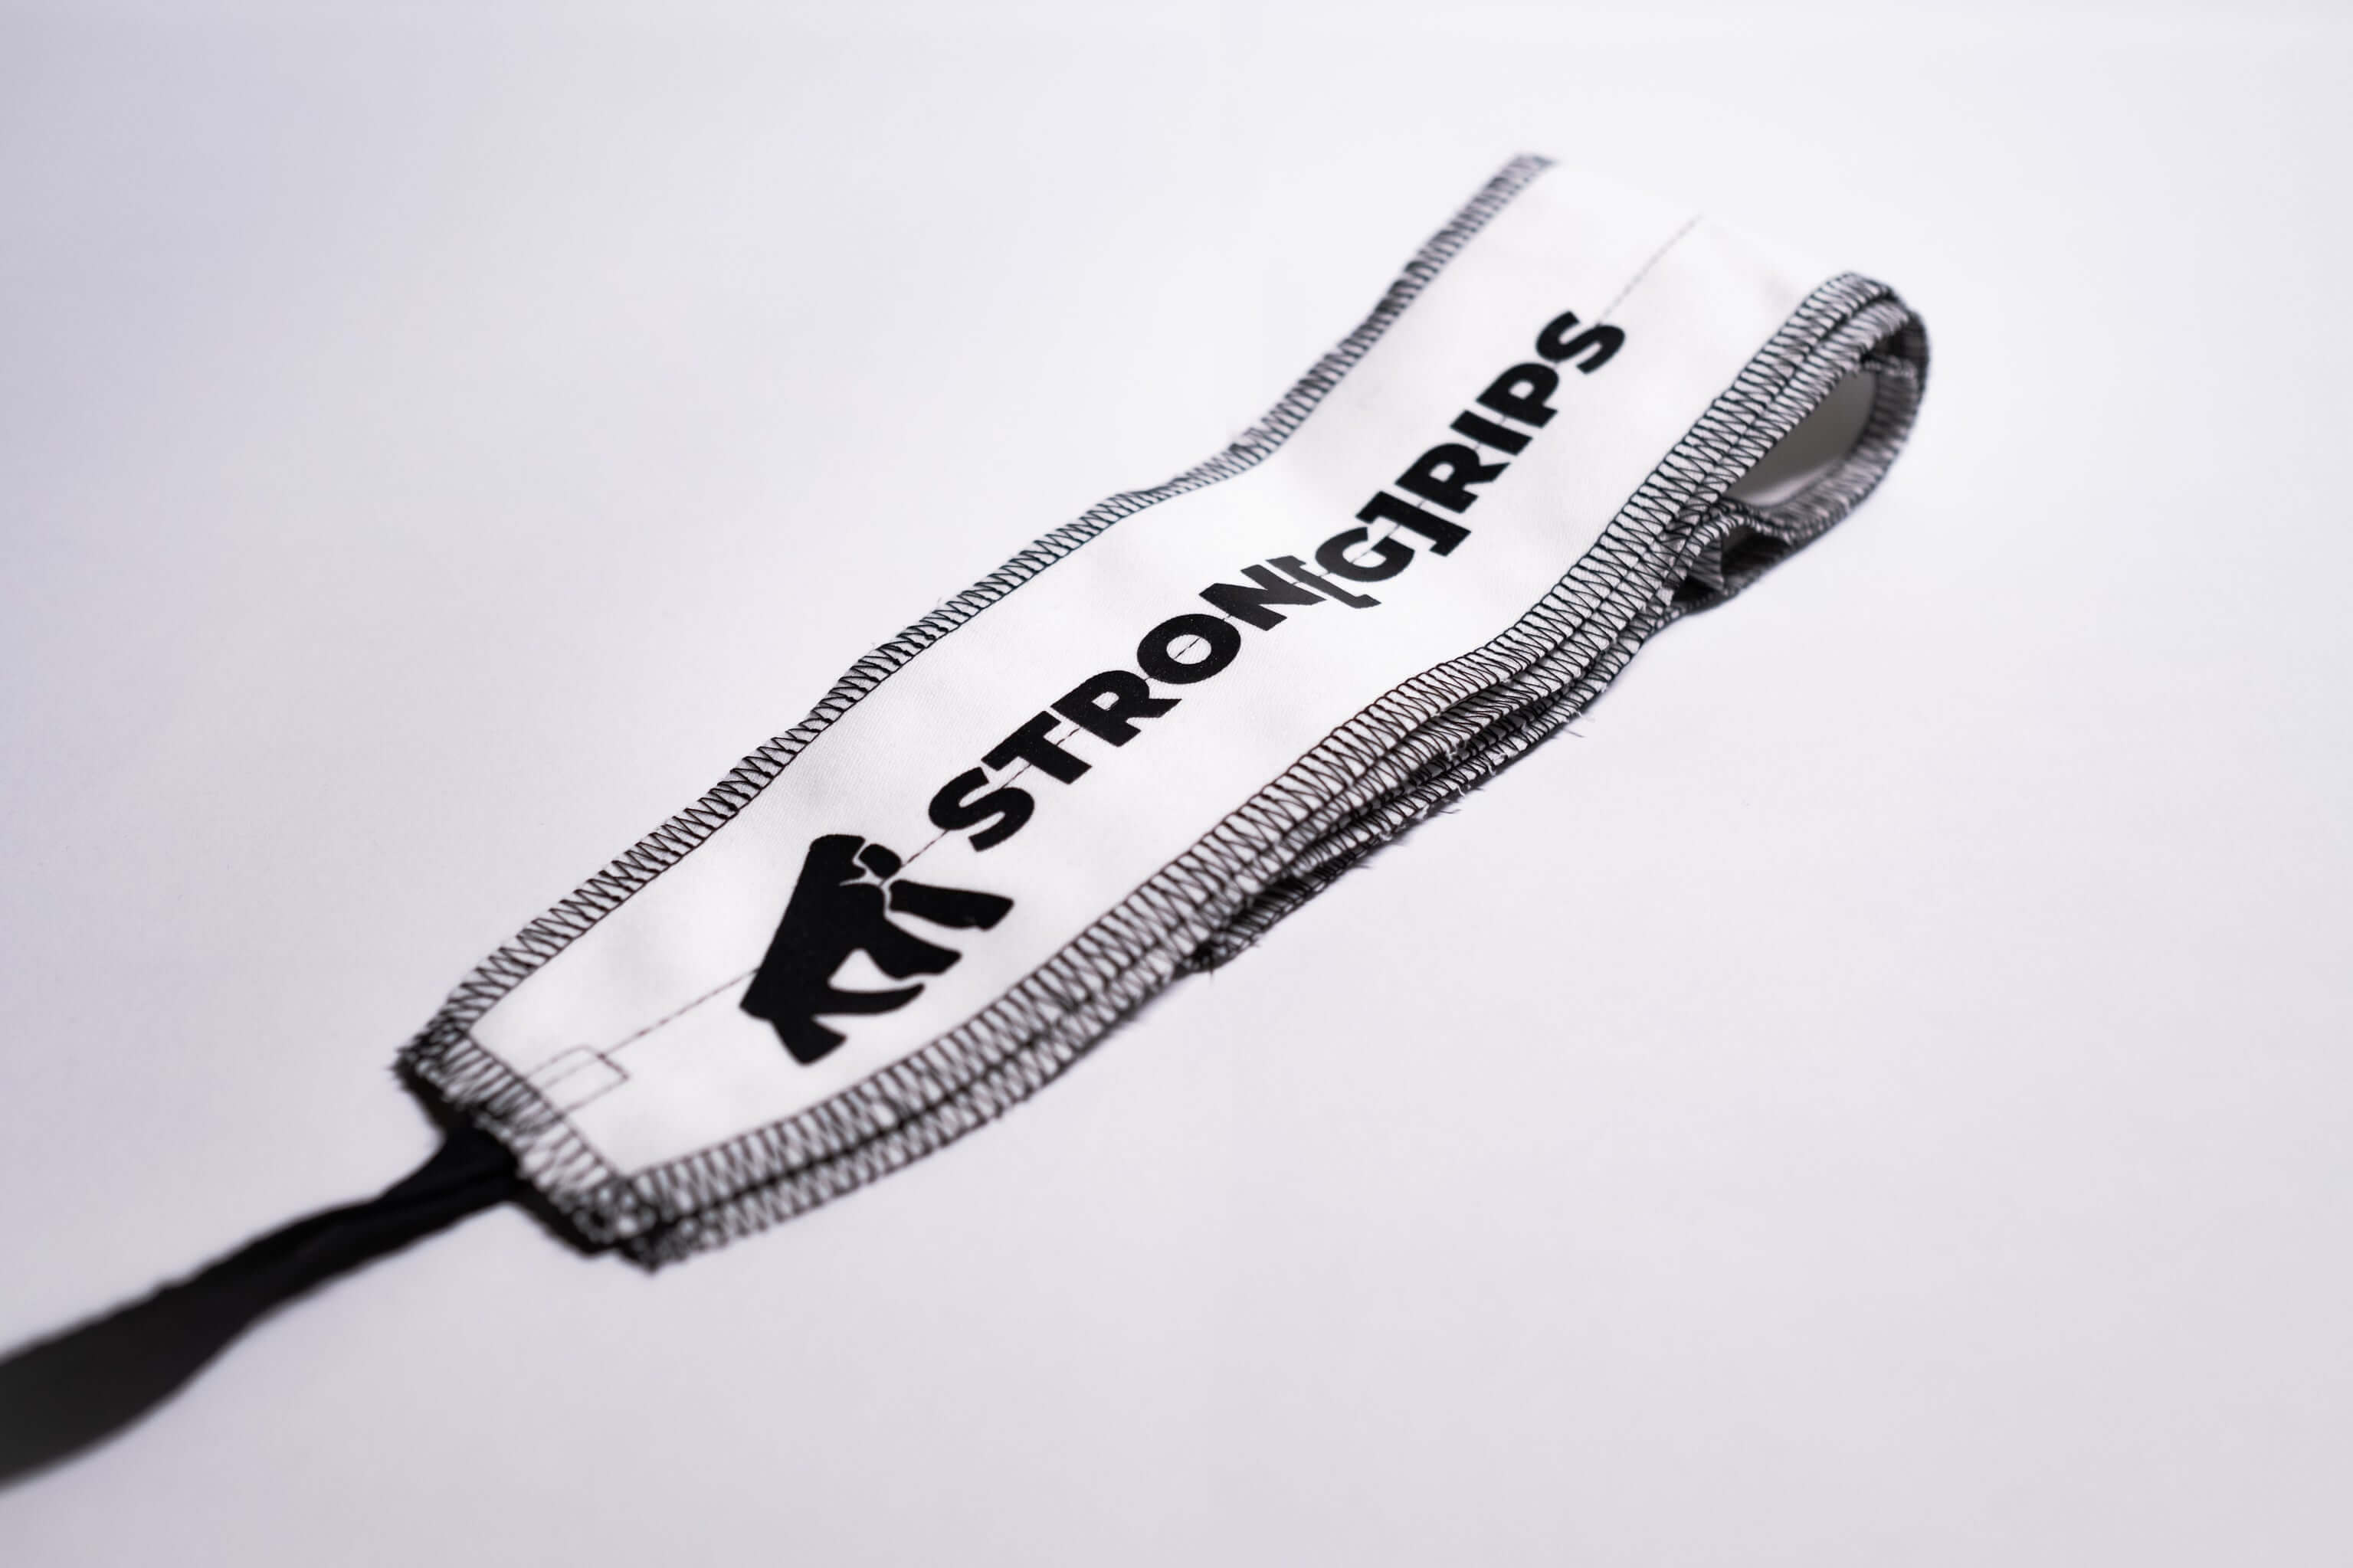 En güçlü bilek desteği için StronGrips Bileklik